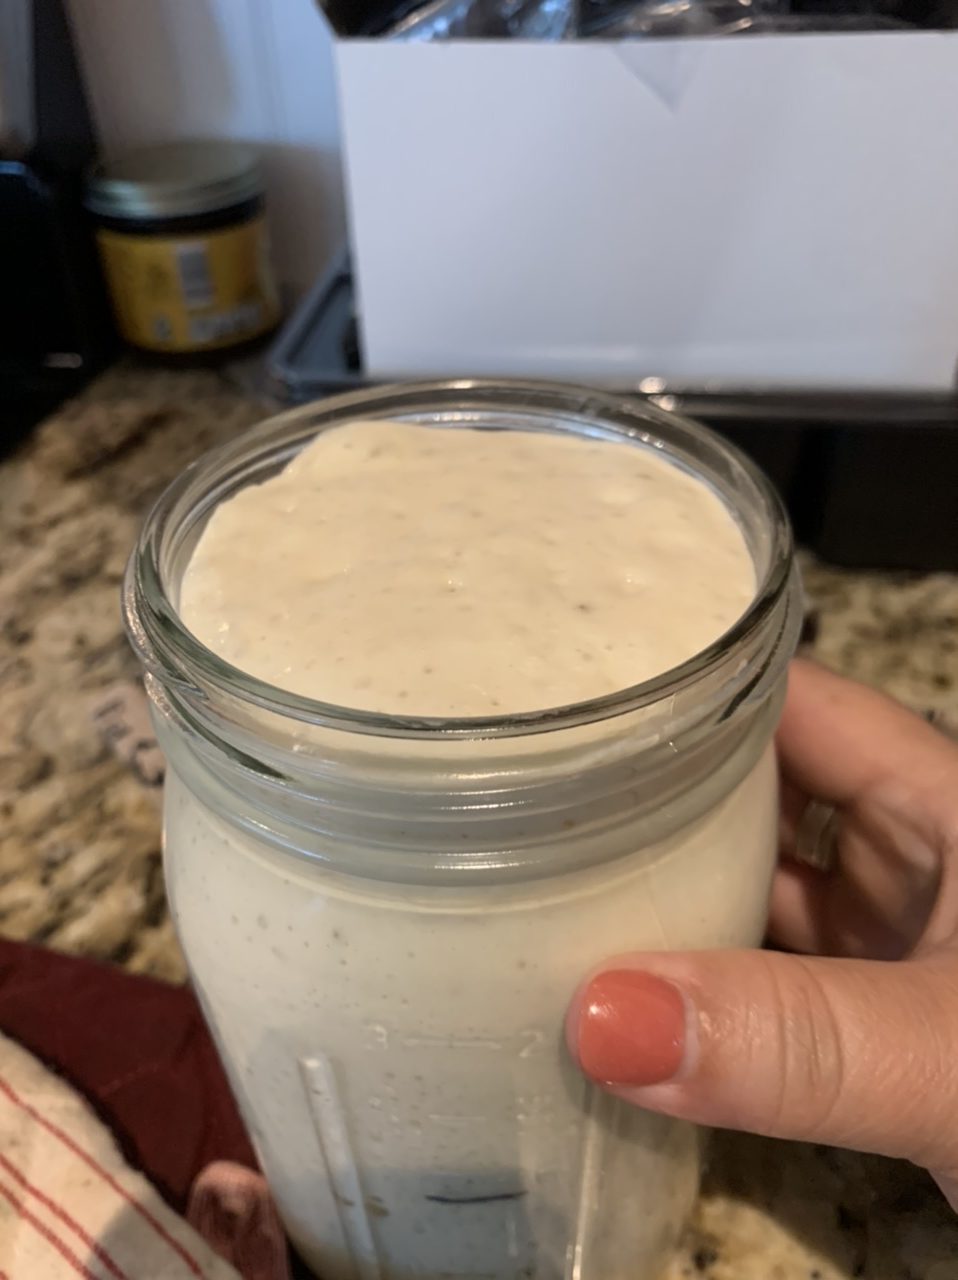 bubbly sourdough starter in glass jar